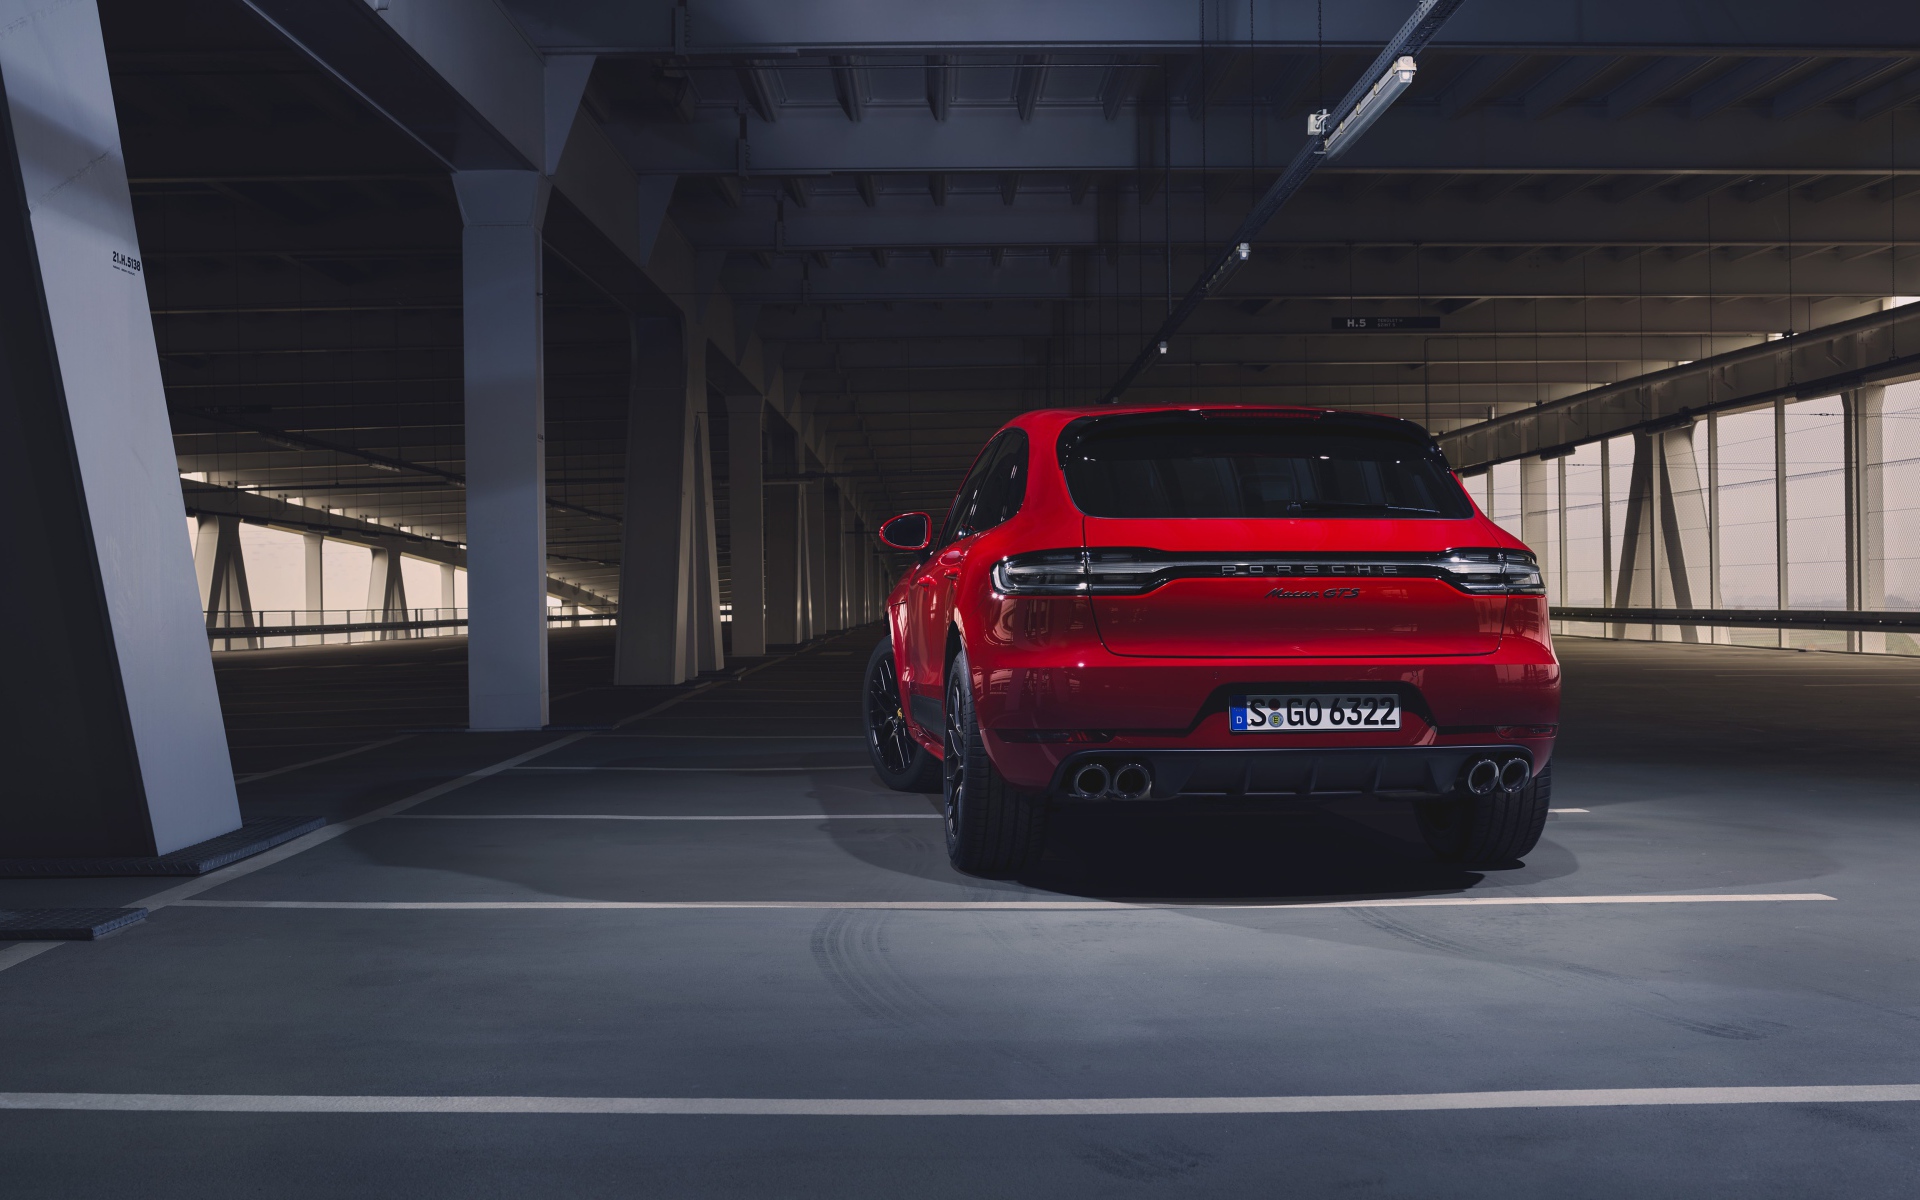 Красный внедорожник Porsche Macan GTS 2020 года на парковке